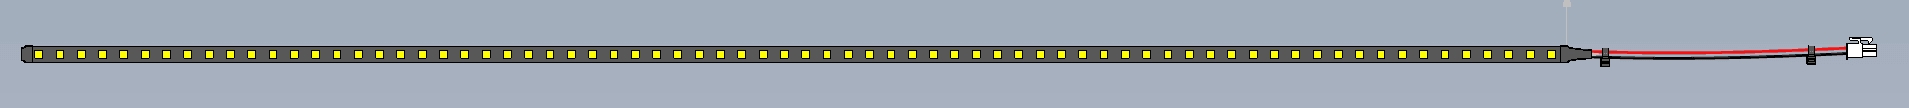 LED Strip - Vendnet